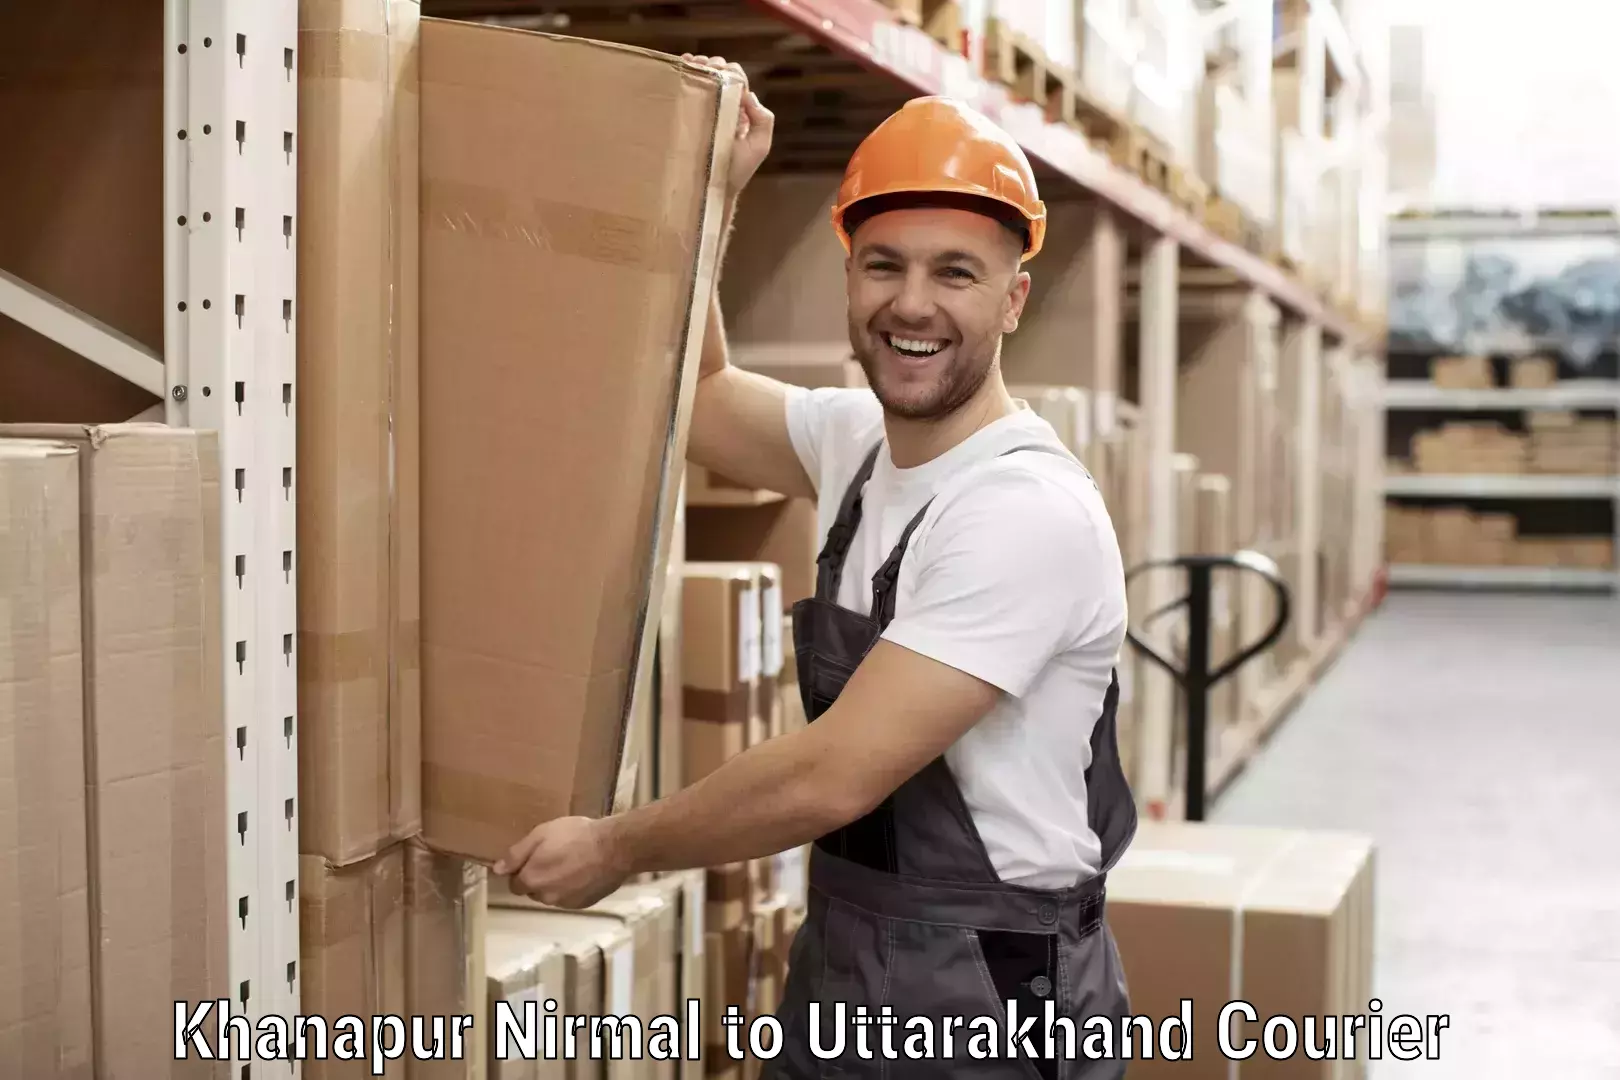 Urban courier service Khanapur Nirmal to Bhagwanpur